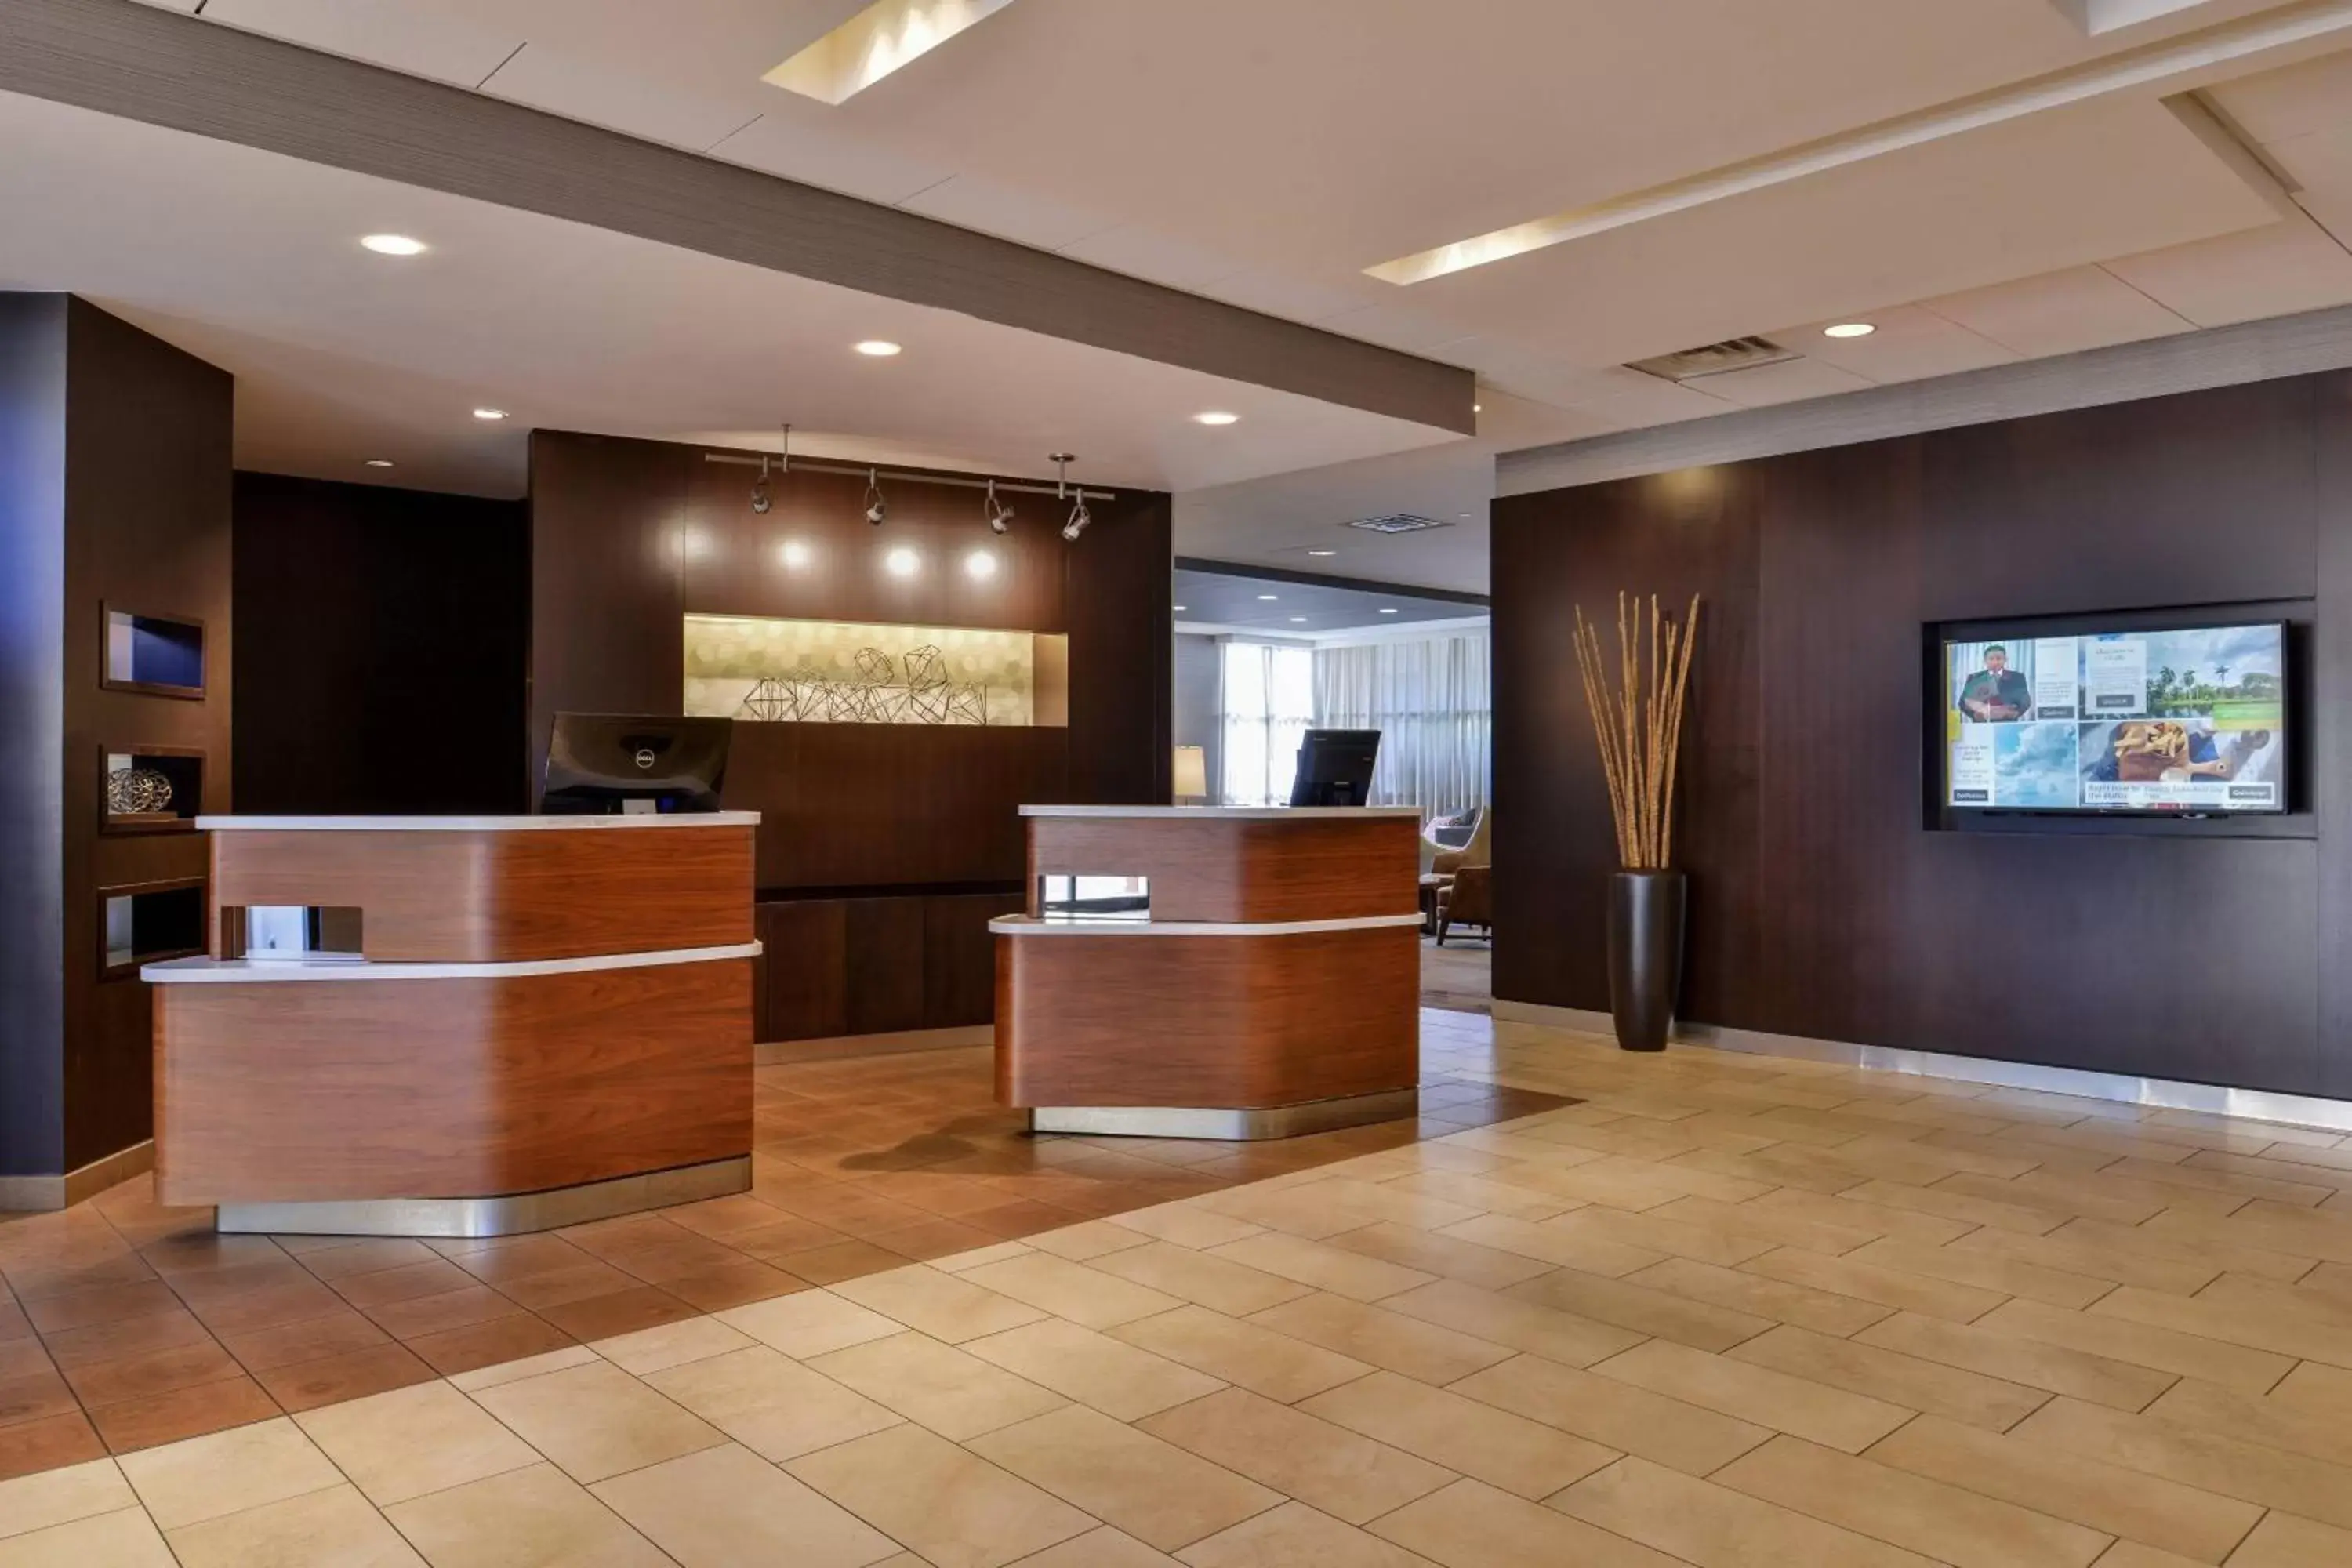 Lobby or reception, Lobby/Reception in Courtyard by Marriott Ocala